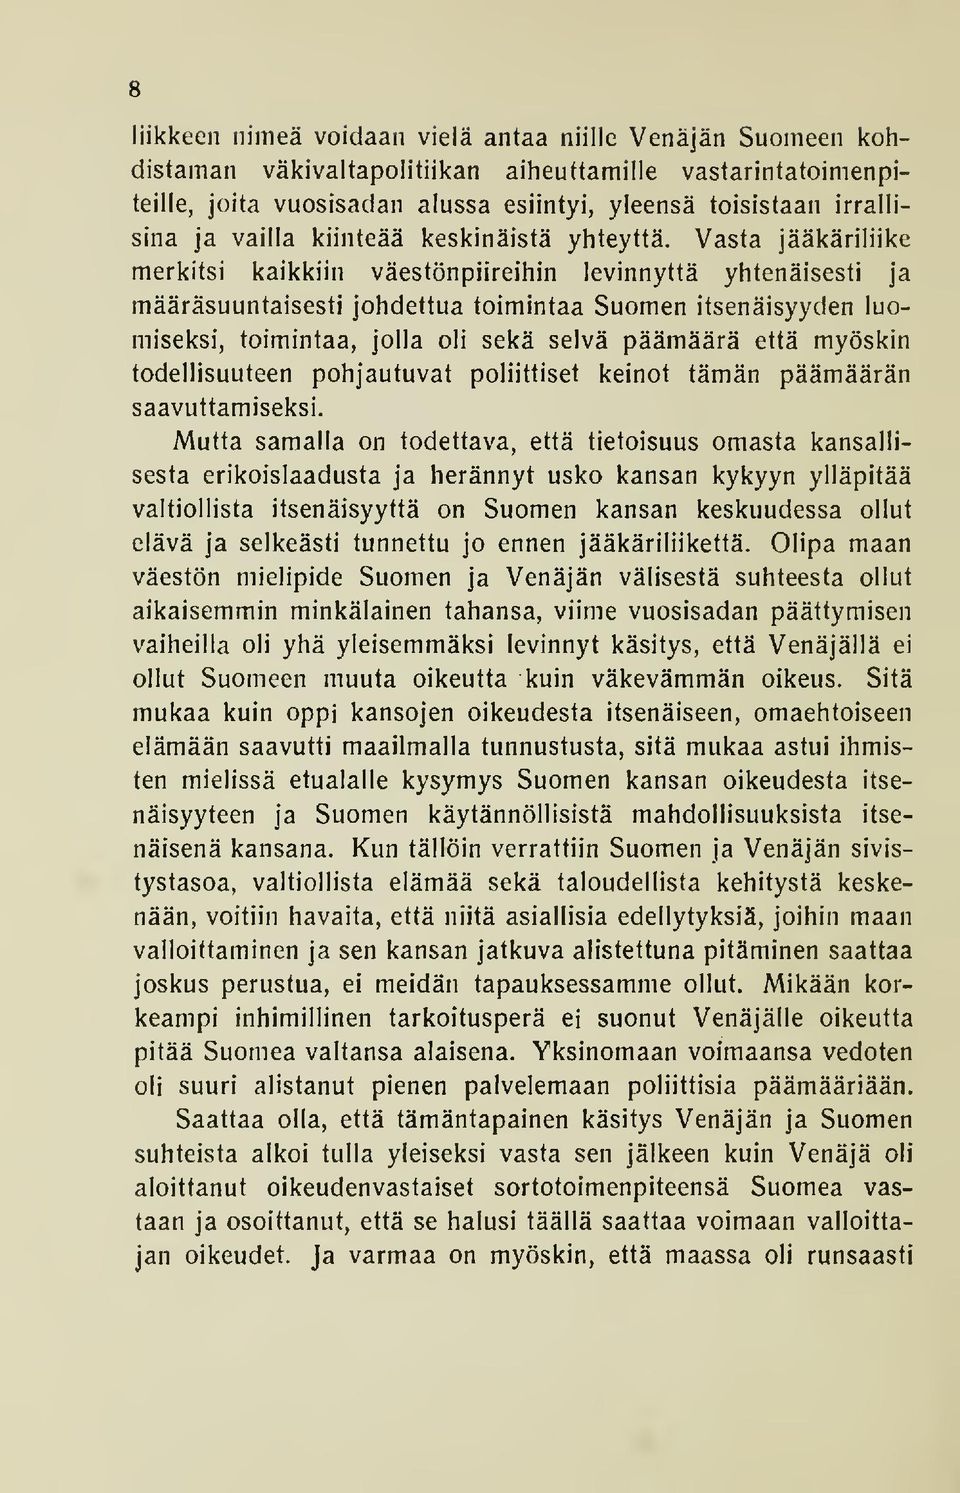 Vasta jääkäriliike merkitsi kaikkiin väestönpiireihin levinnyttä yhtenäisesti ja määräsuuntaisesti johdettua toimintaa Suomen itsenäisyyden luomiseksi, toimintaa, jolla oli sekä selvä päämäärä että